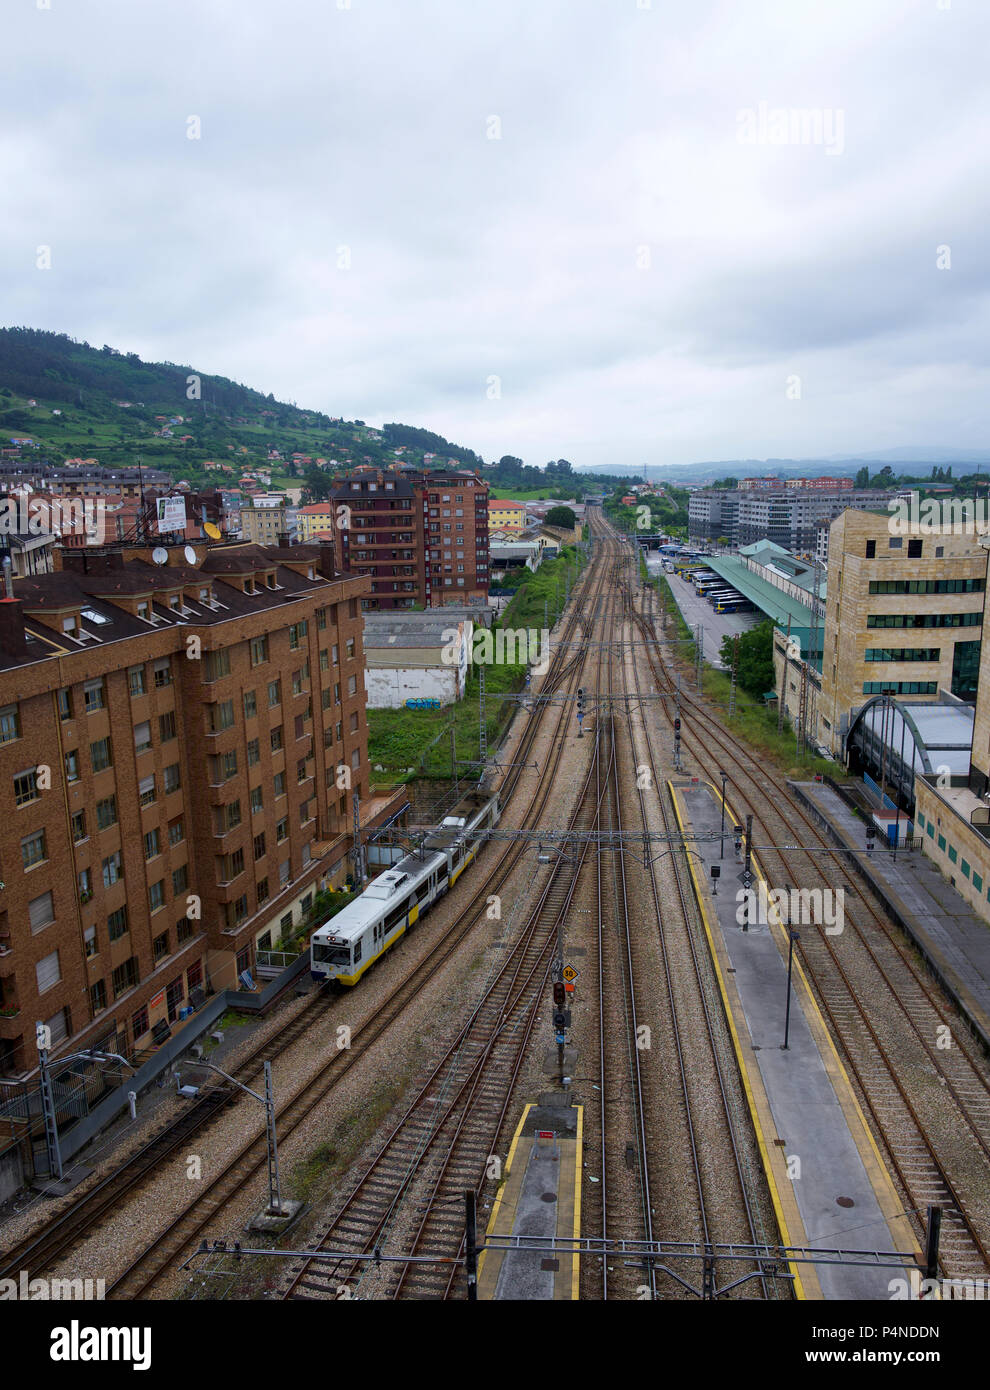 Railway tracks, Oviedo, Asturias, Spain Stock Photo